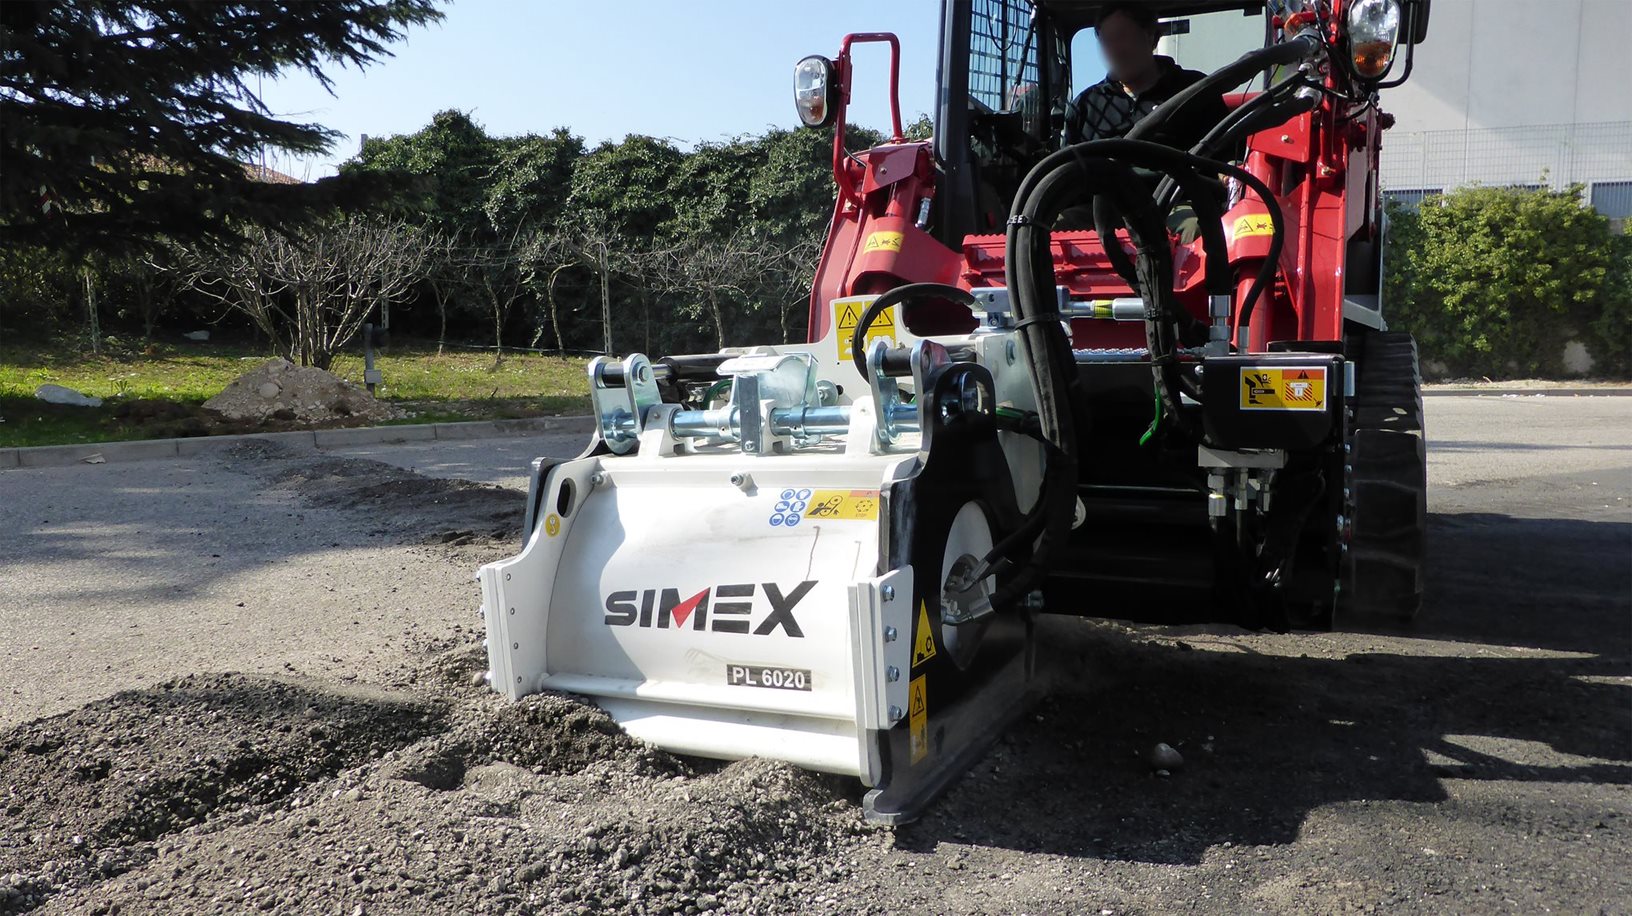 Simex PL 60.20 Straßenfräse, selbstnivellierend, bestens geeignet zum Abfräsen von unebenem Asphalt zwecks Sanierung beschädigter Oberflächen.